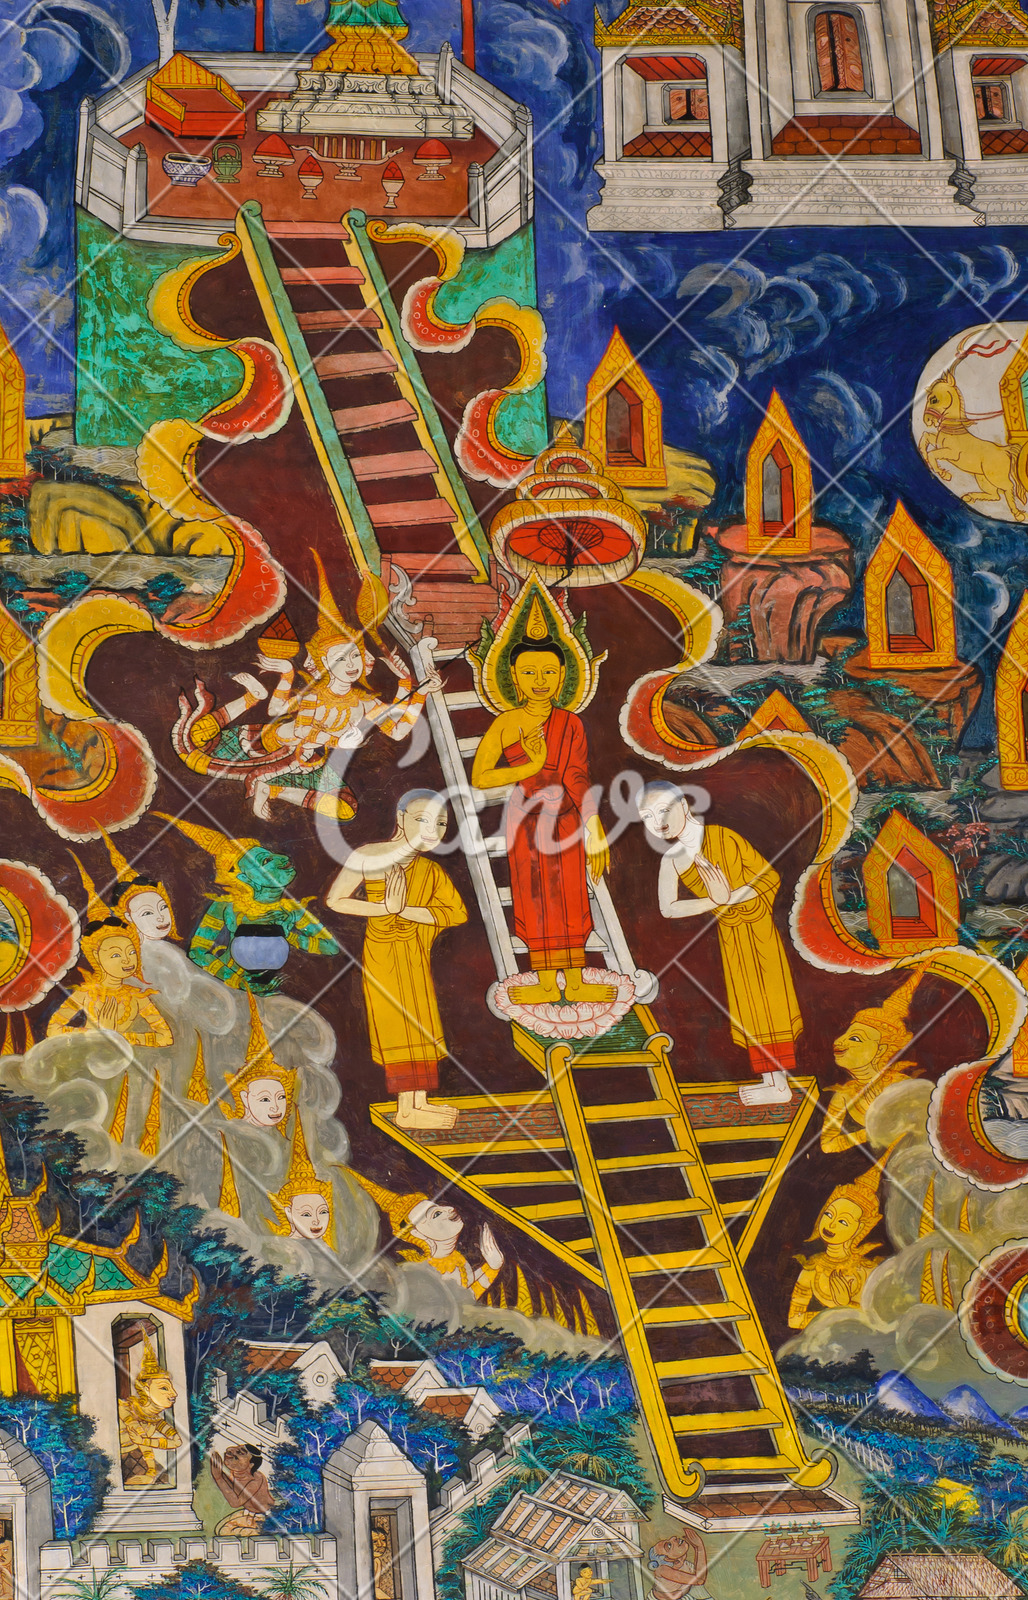 壁画寺庙绘画作品泰国佛教僧侣宗教摄影图像图片